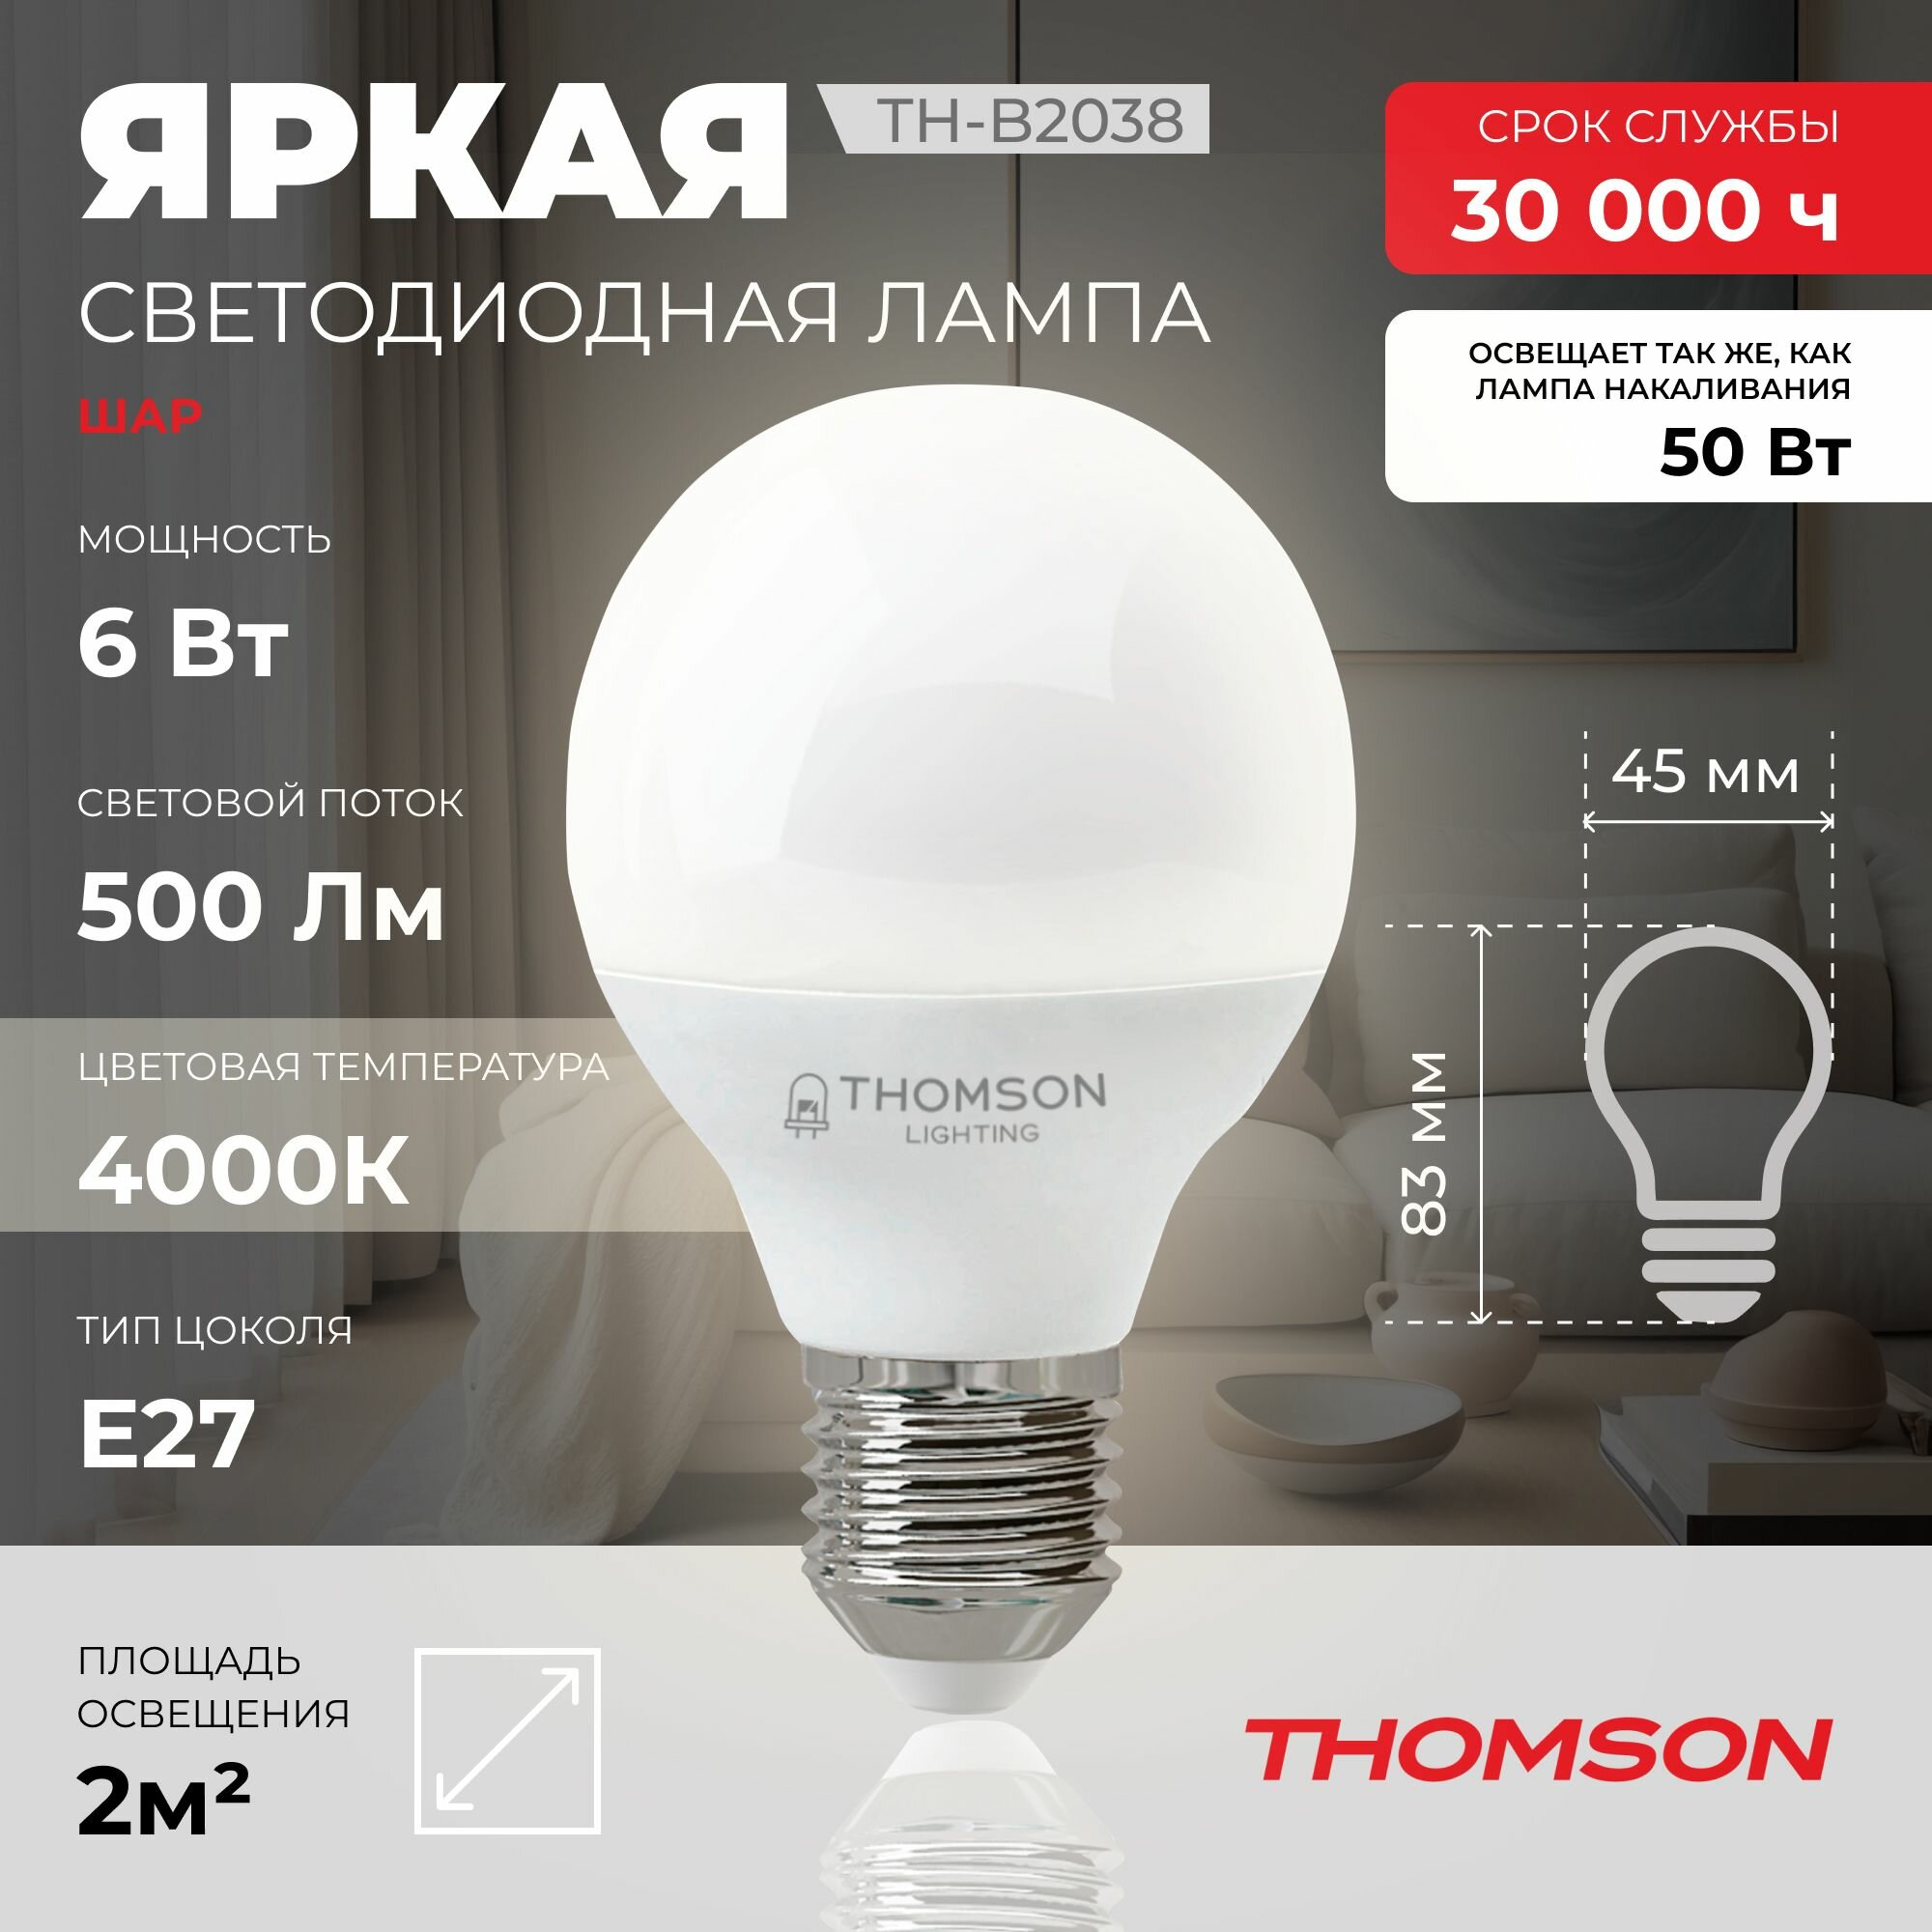 Лампочка Thomson TH-B2038 6 Вт, E27, 4000K, шар, нейтральный белый свет